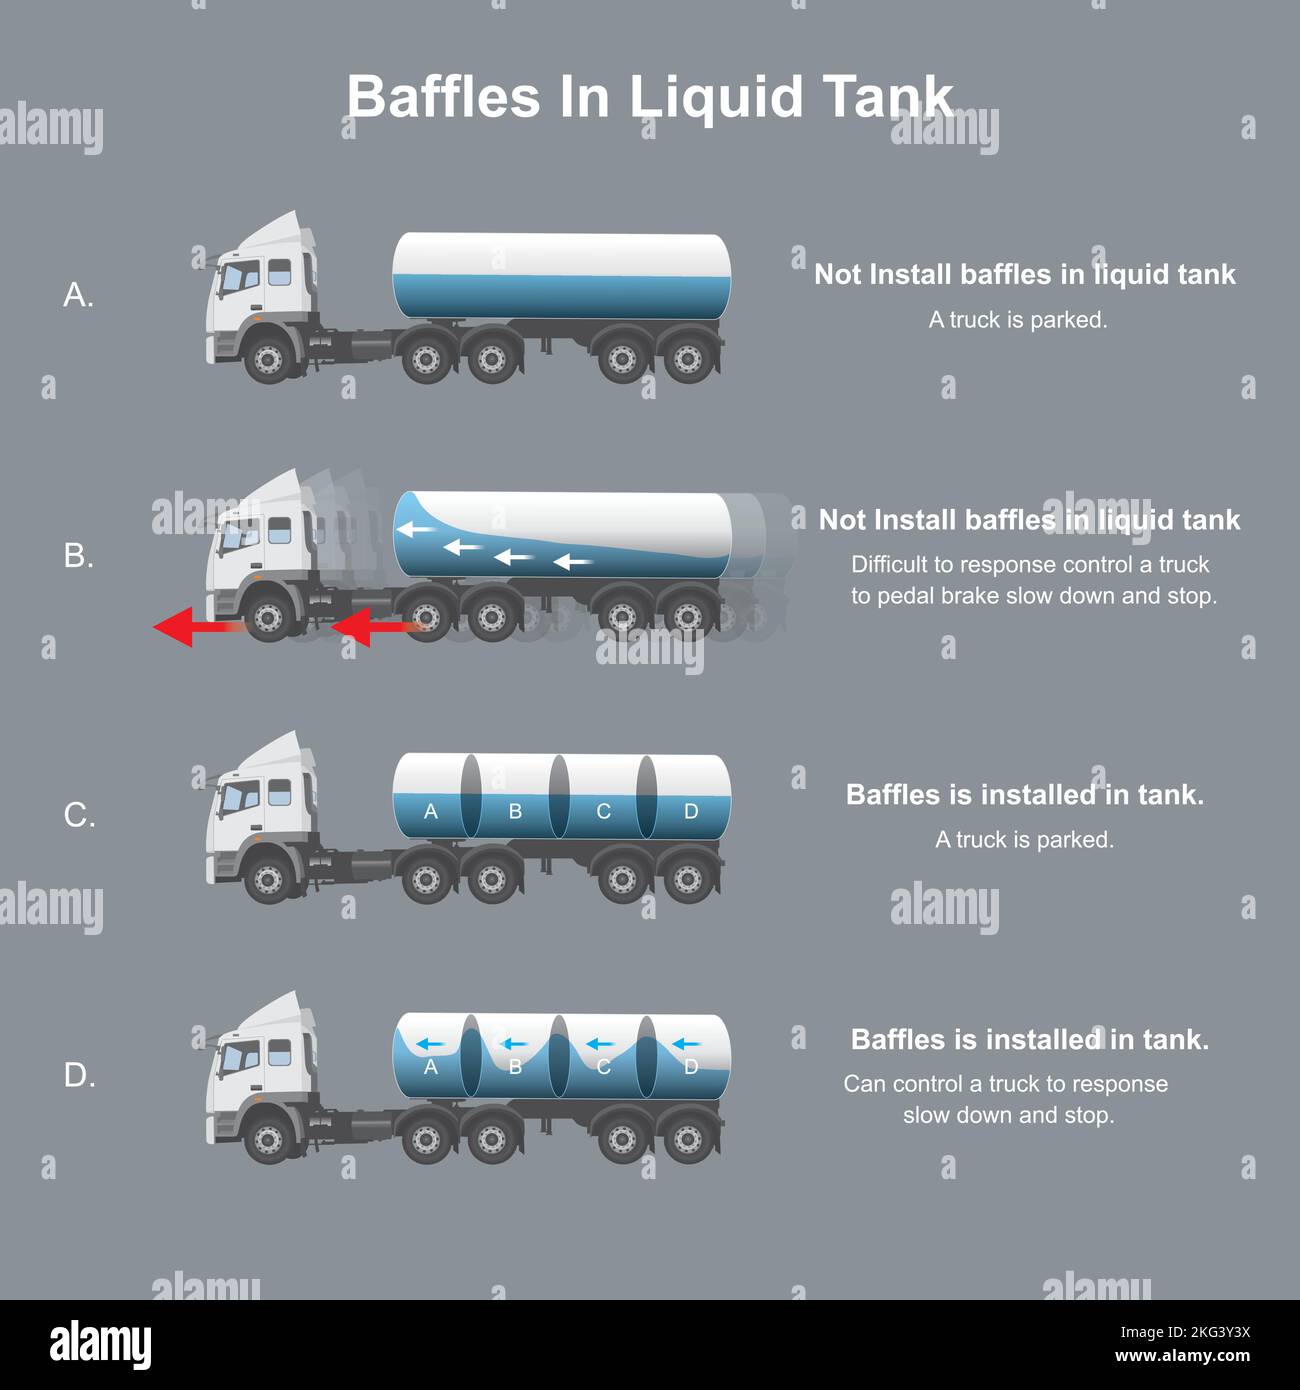 Baffles in liquid tank. explain happen with a truck installed baffles in liquid tank contain. Stock Vector